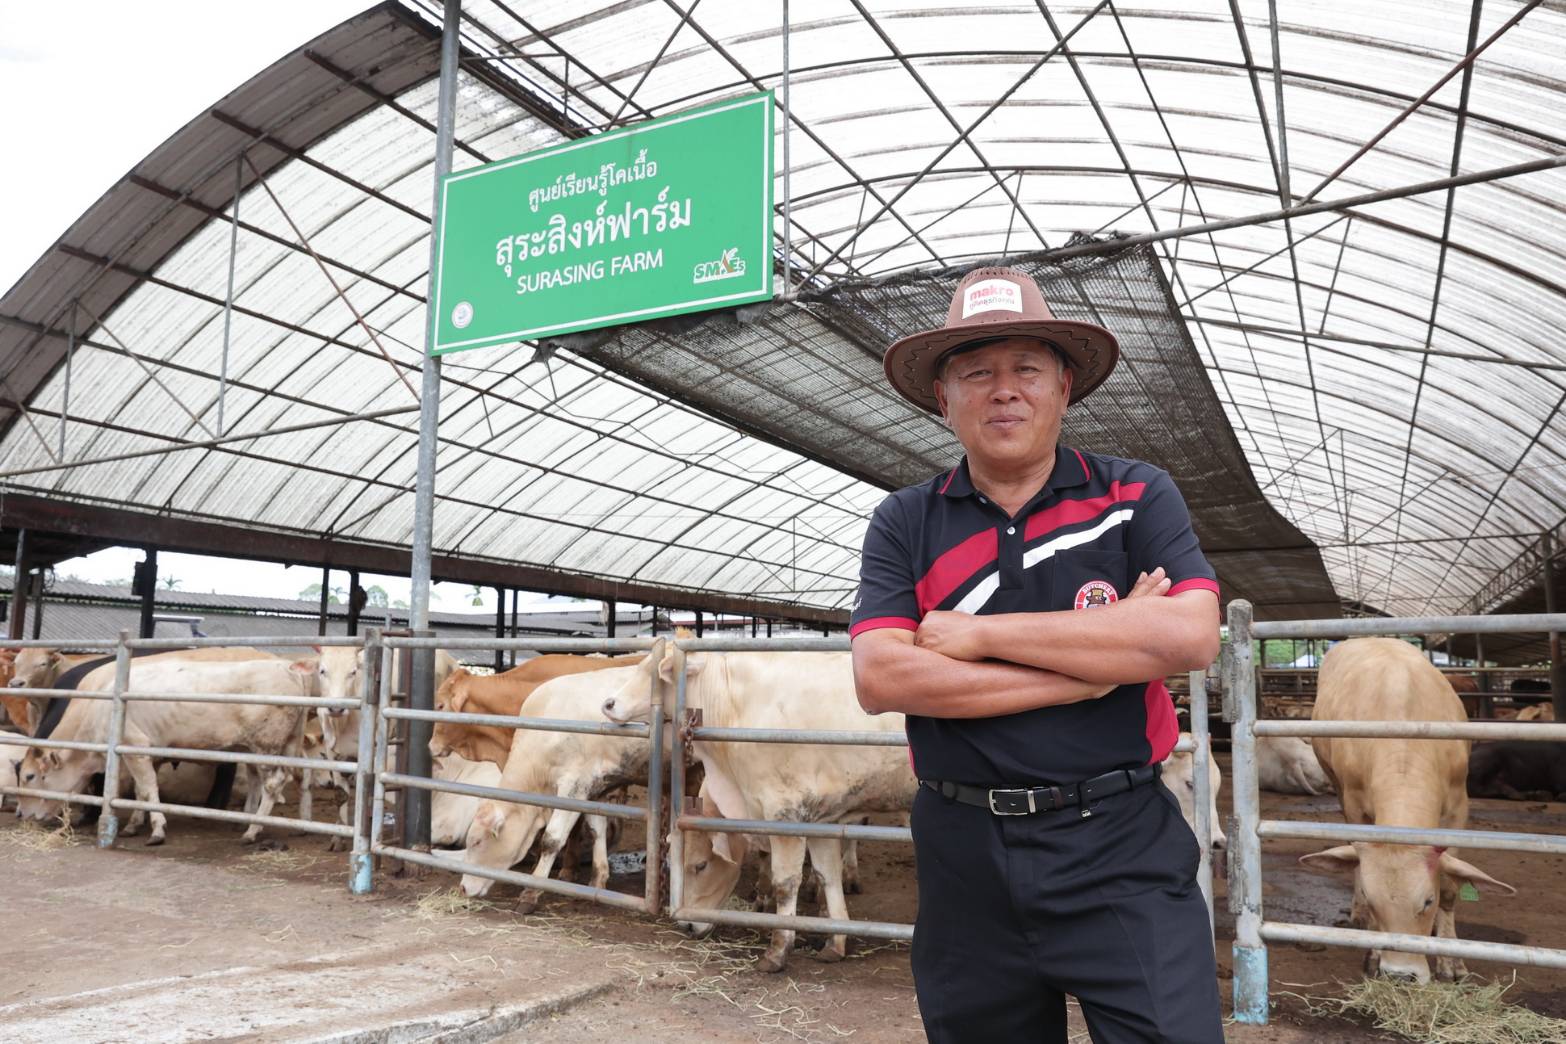 แม็คโคร ผุดโมเดลเกษตรยั่งยืน หนุนผู้เลี้ยงวัวไทย ผลิตเนื้อพรีเมียม ชูจุดแข็งตลาดนำการผลิต ปรับระบบการเลี้ยง สร้างรายได้เพิ่มกว่า 2 หมื่นต่อตัว